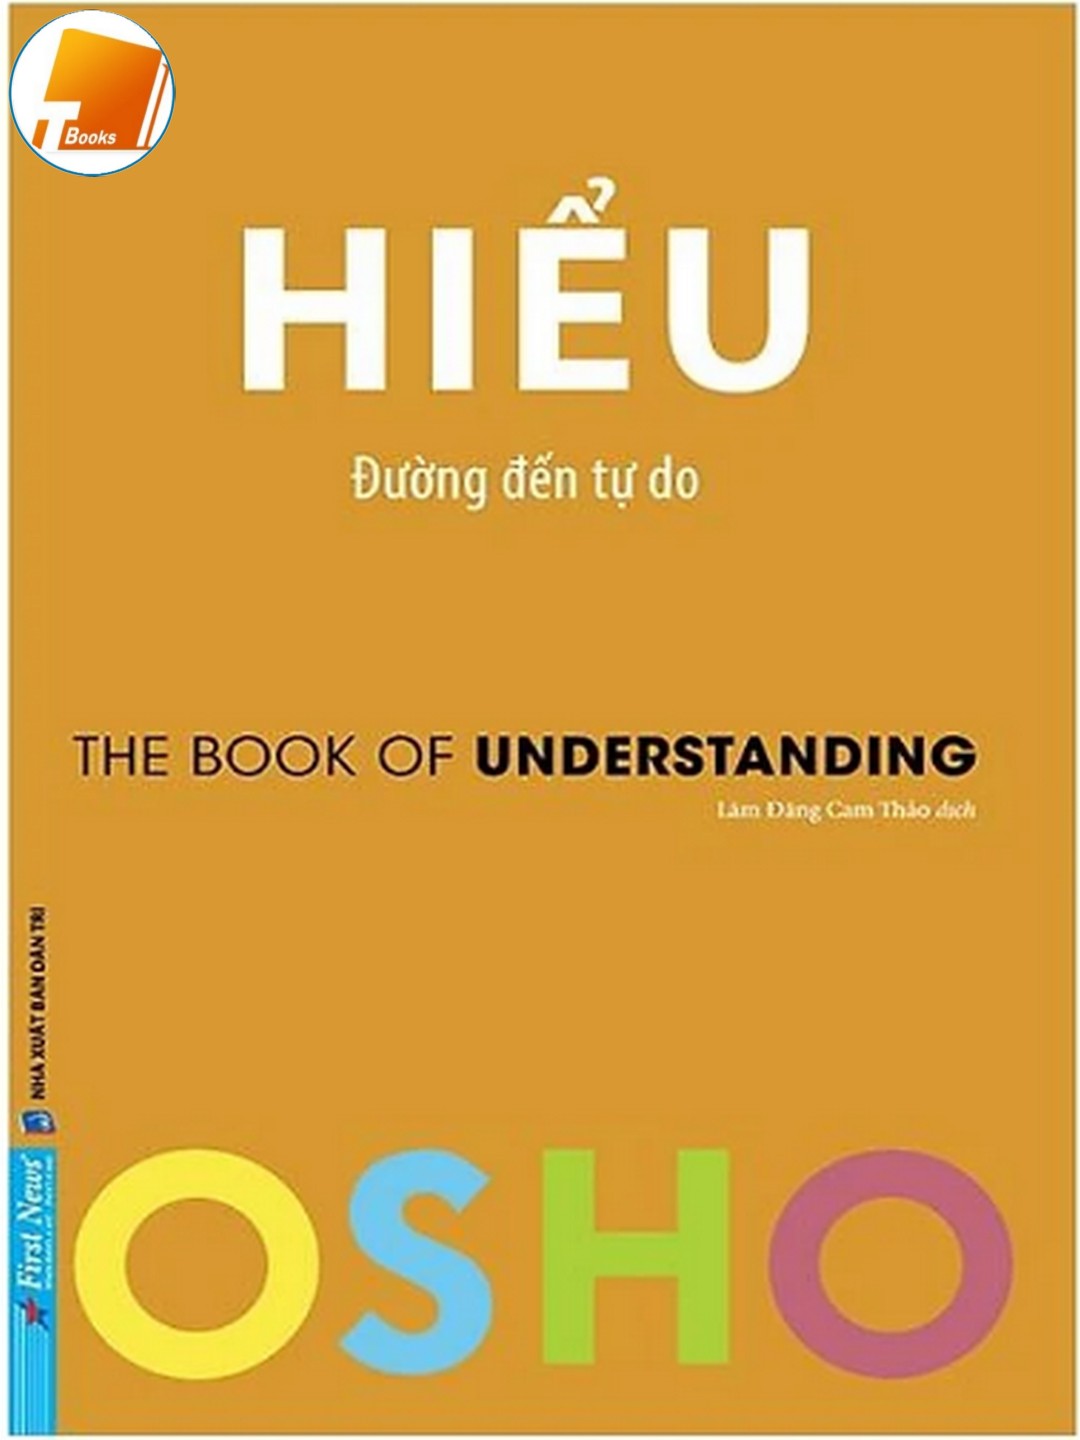 Ebook Osho – Hiểu – Đường Đến Tự Do Pdf EPub